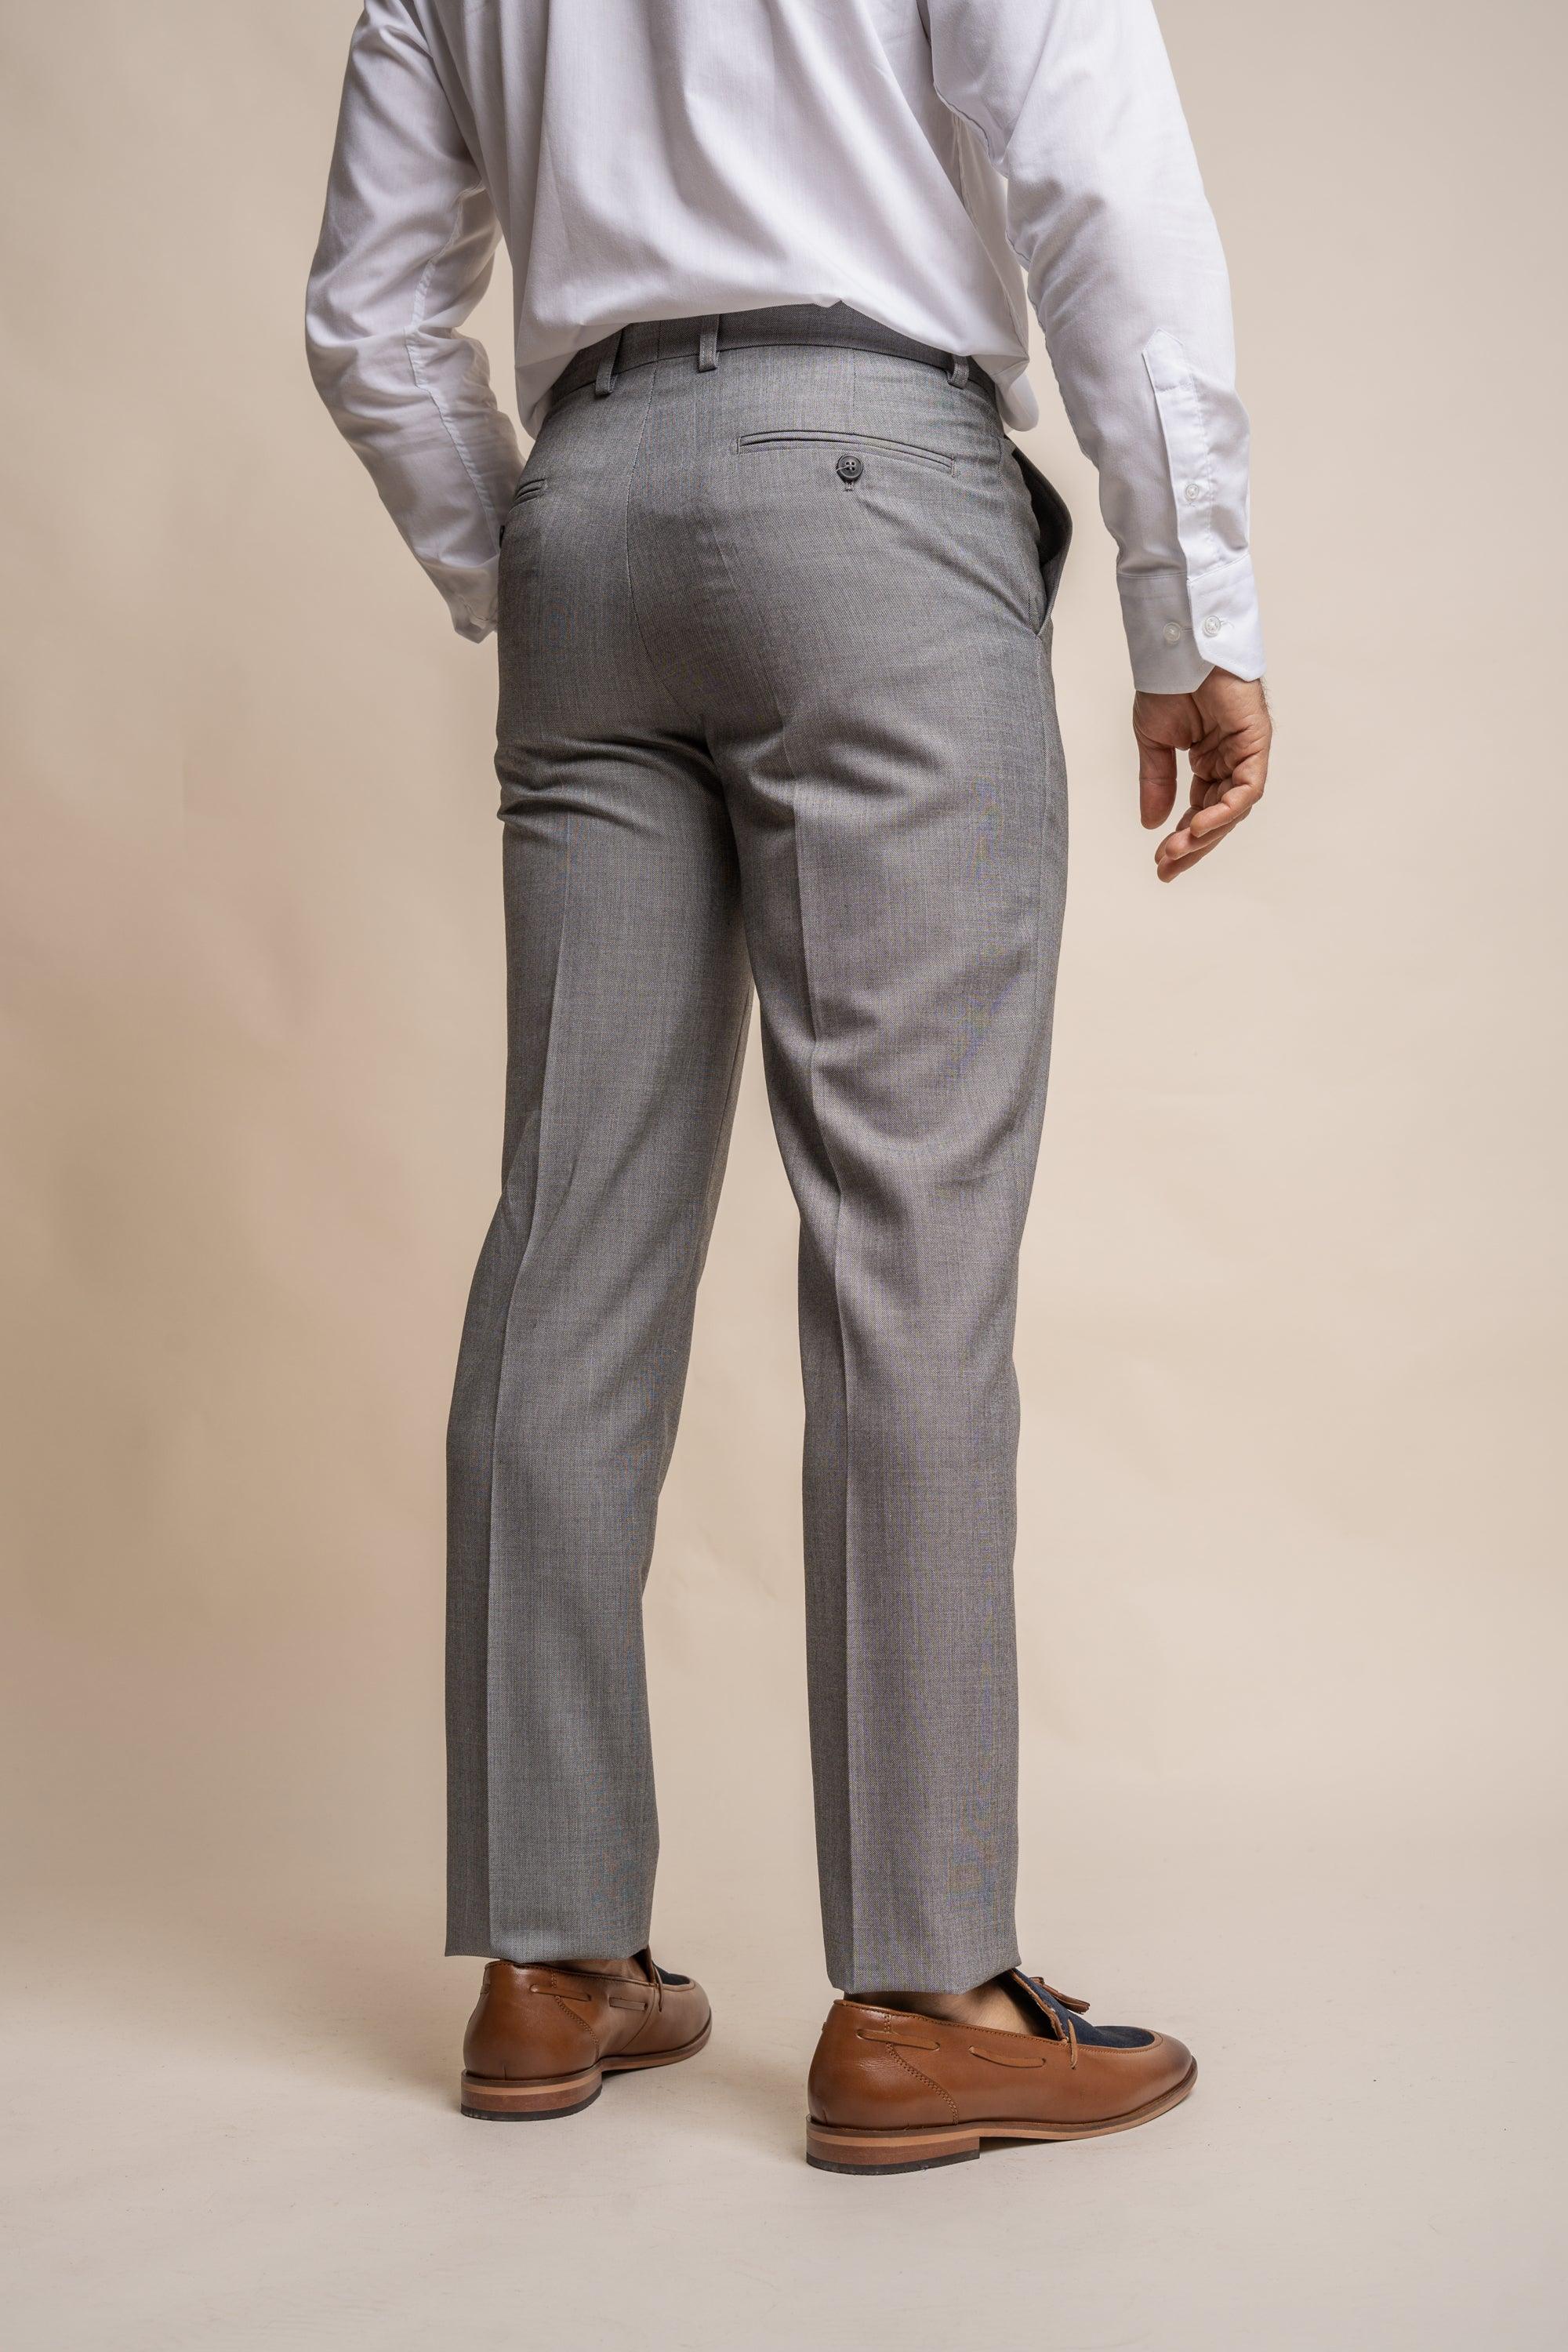 Reegan grey regular trouser back